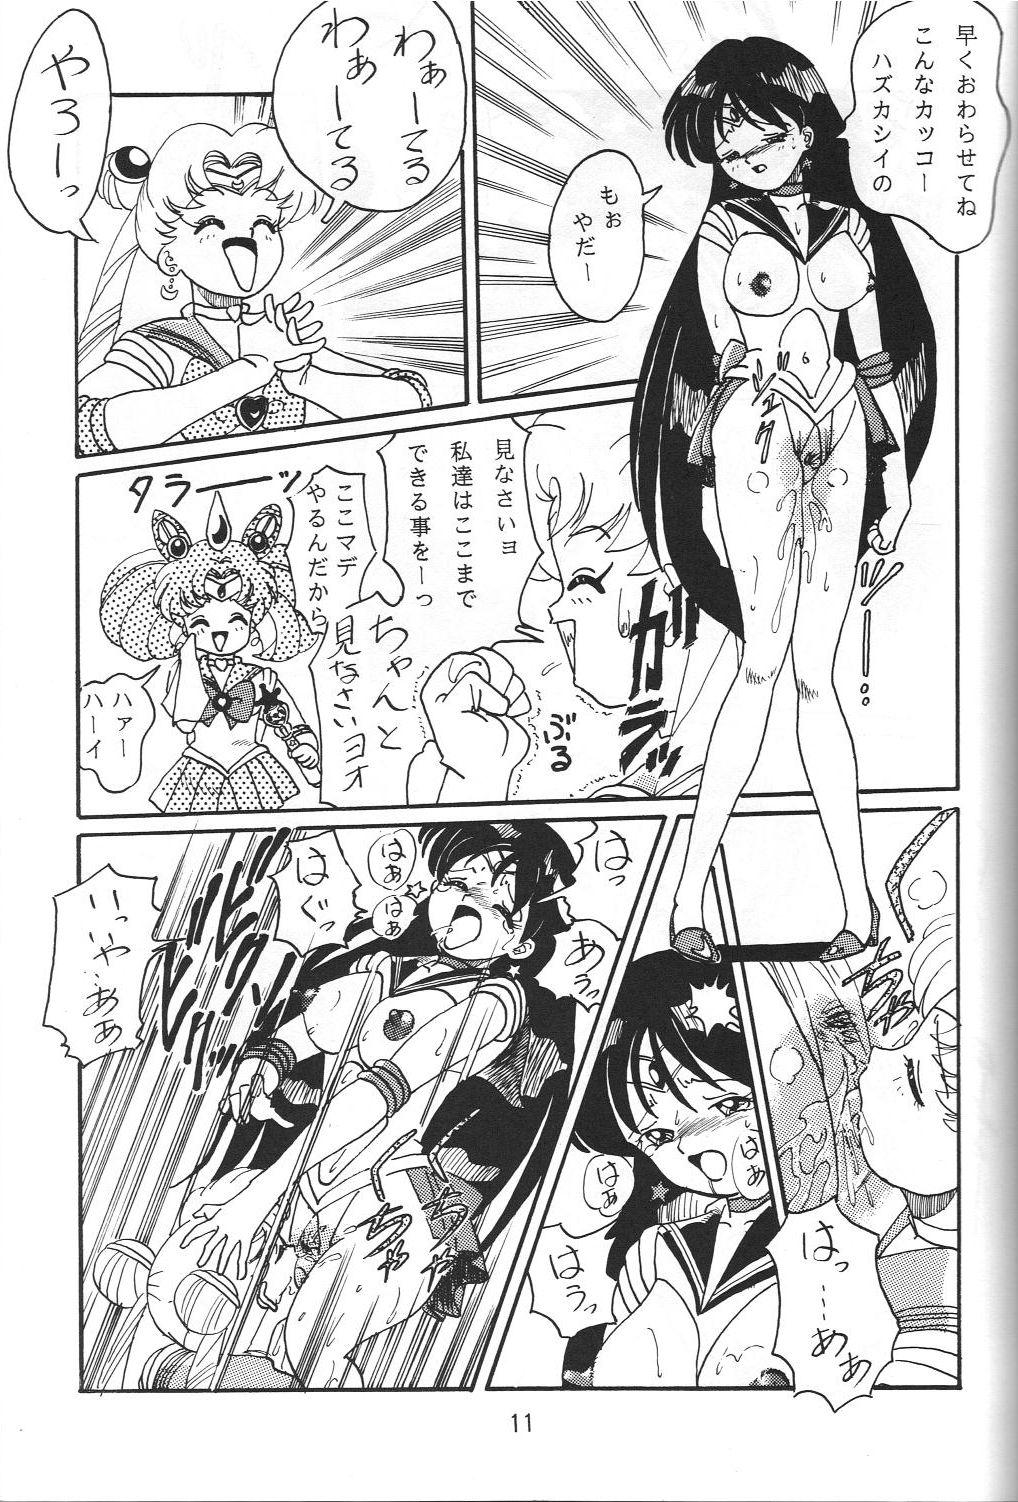 Nice Jiyuu Tamashii - Sailor moon Ah my goddess Tenchi muyo Bj - Page 10